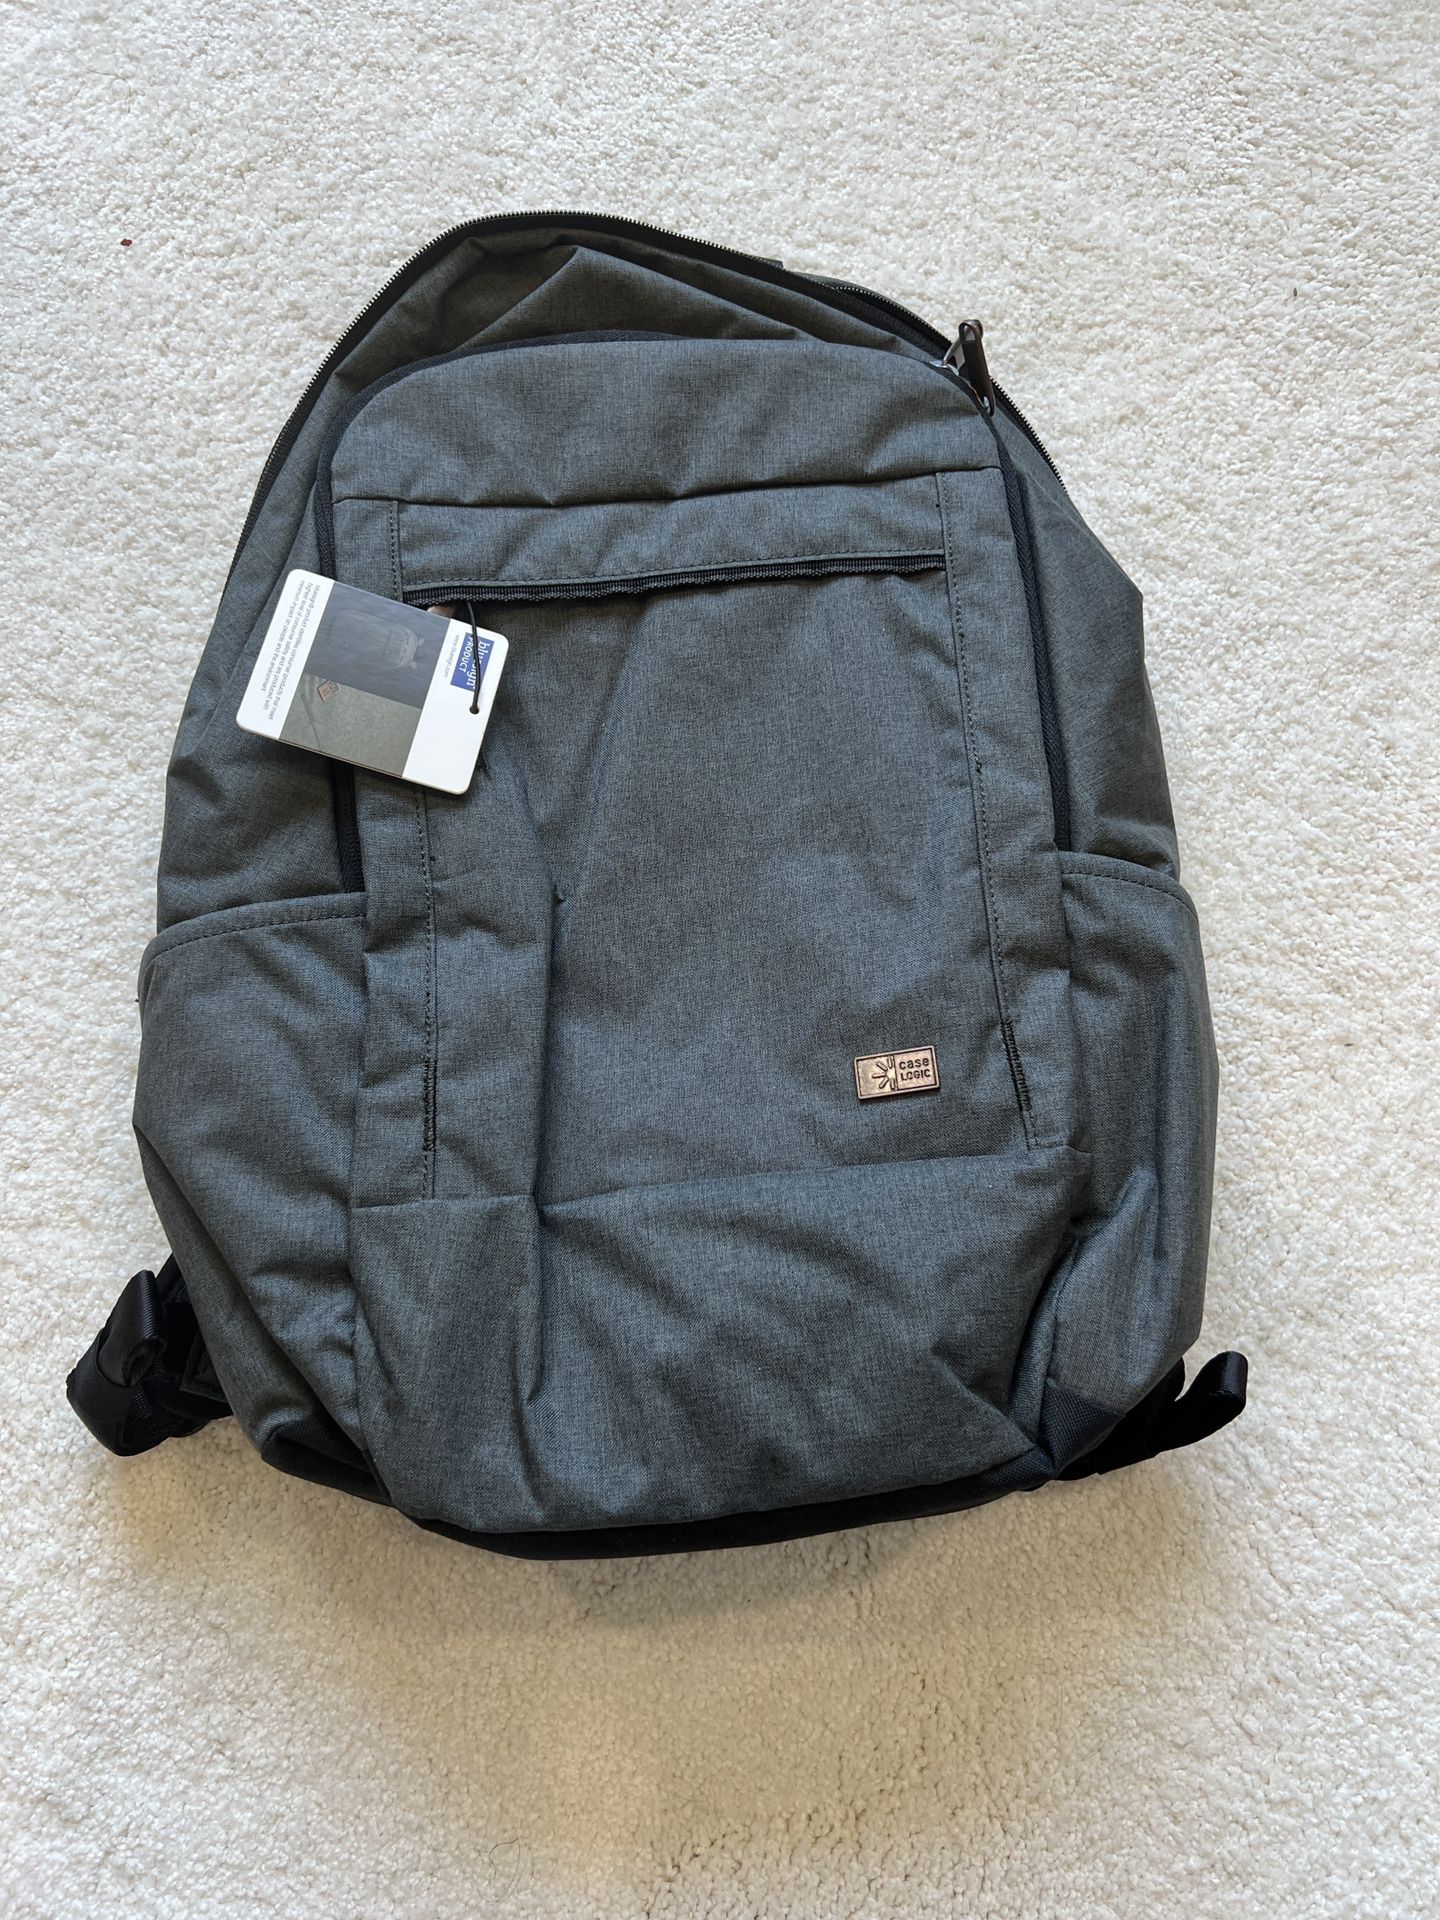 caselogic laptop backpack